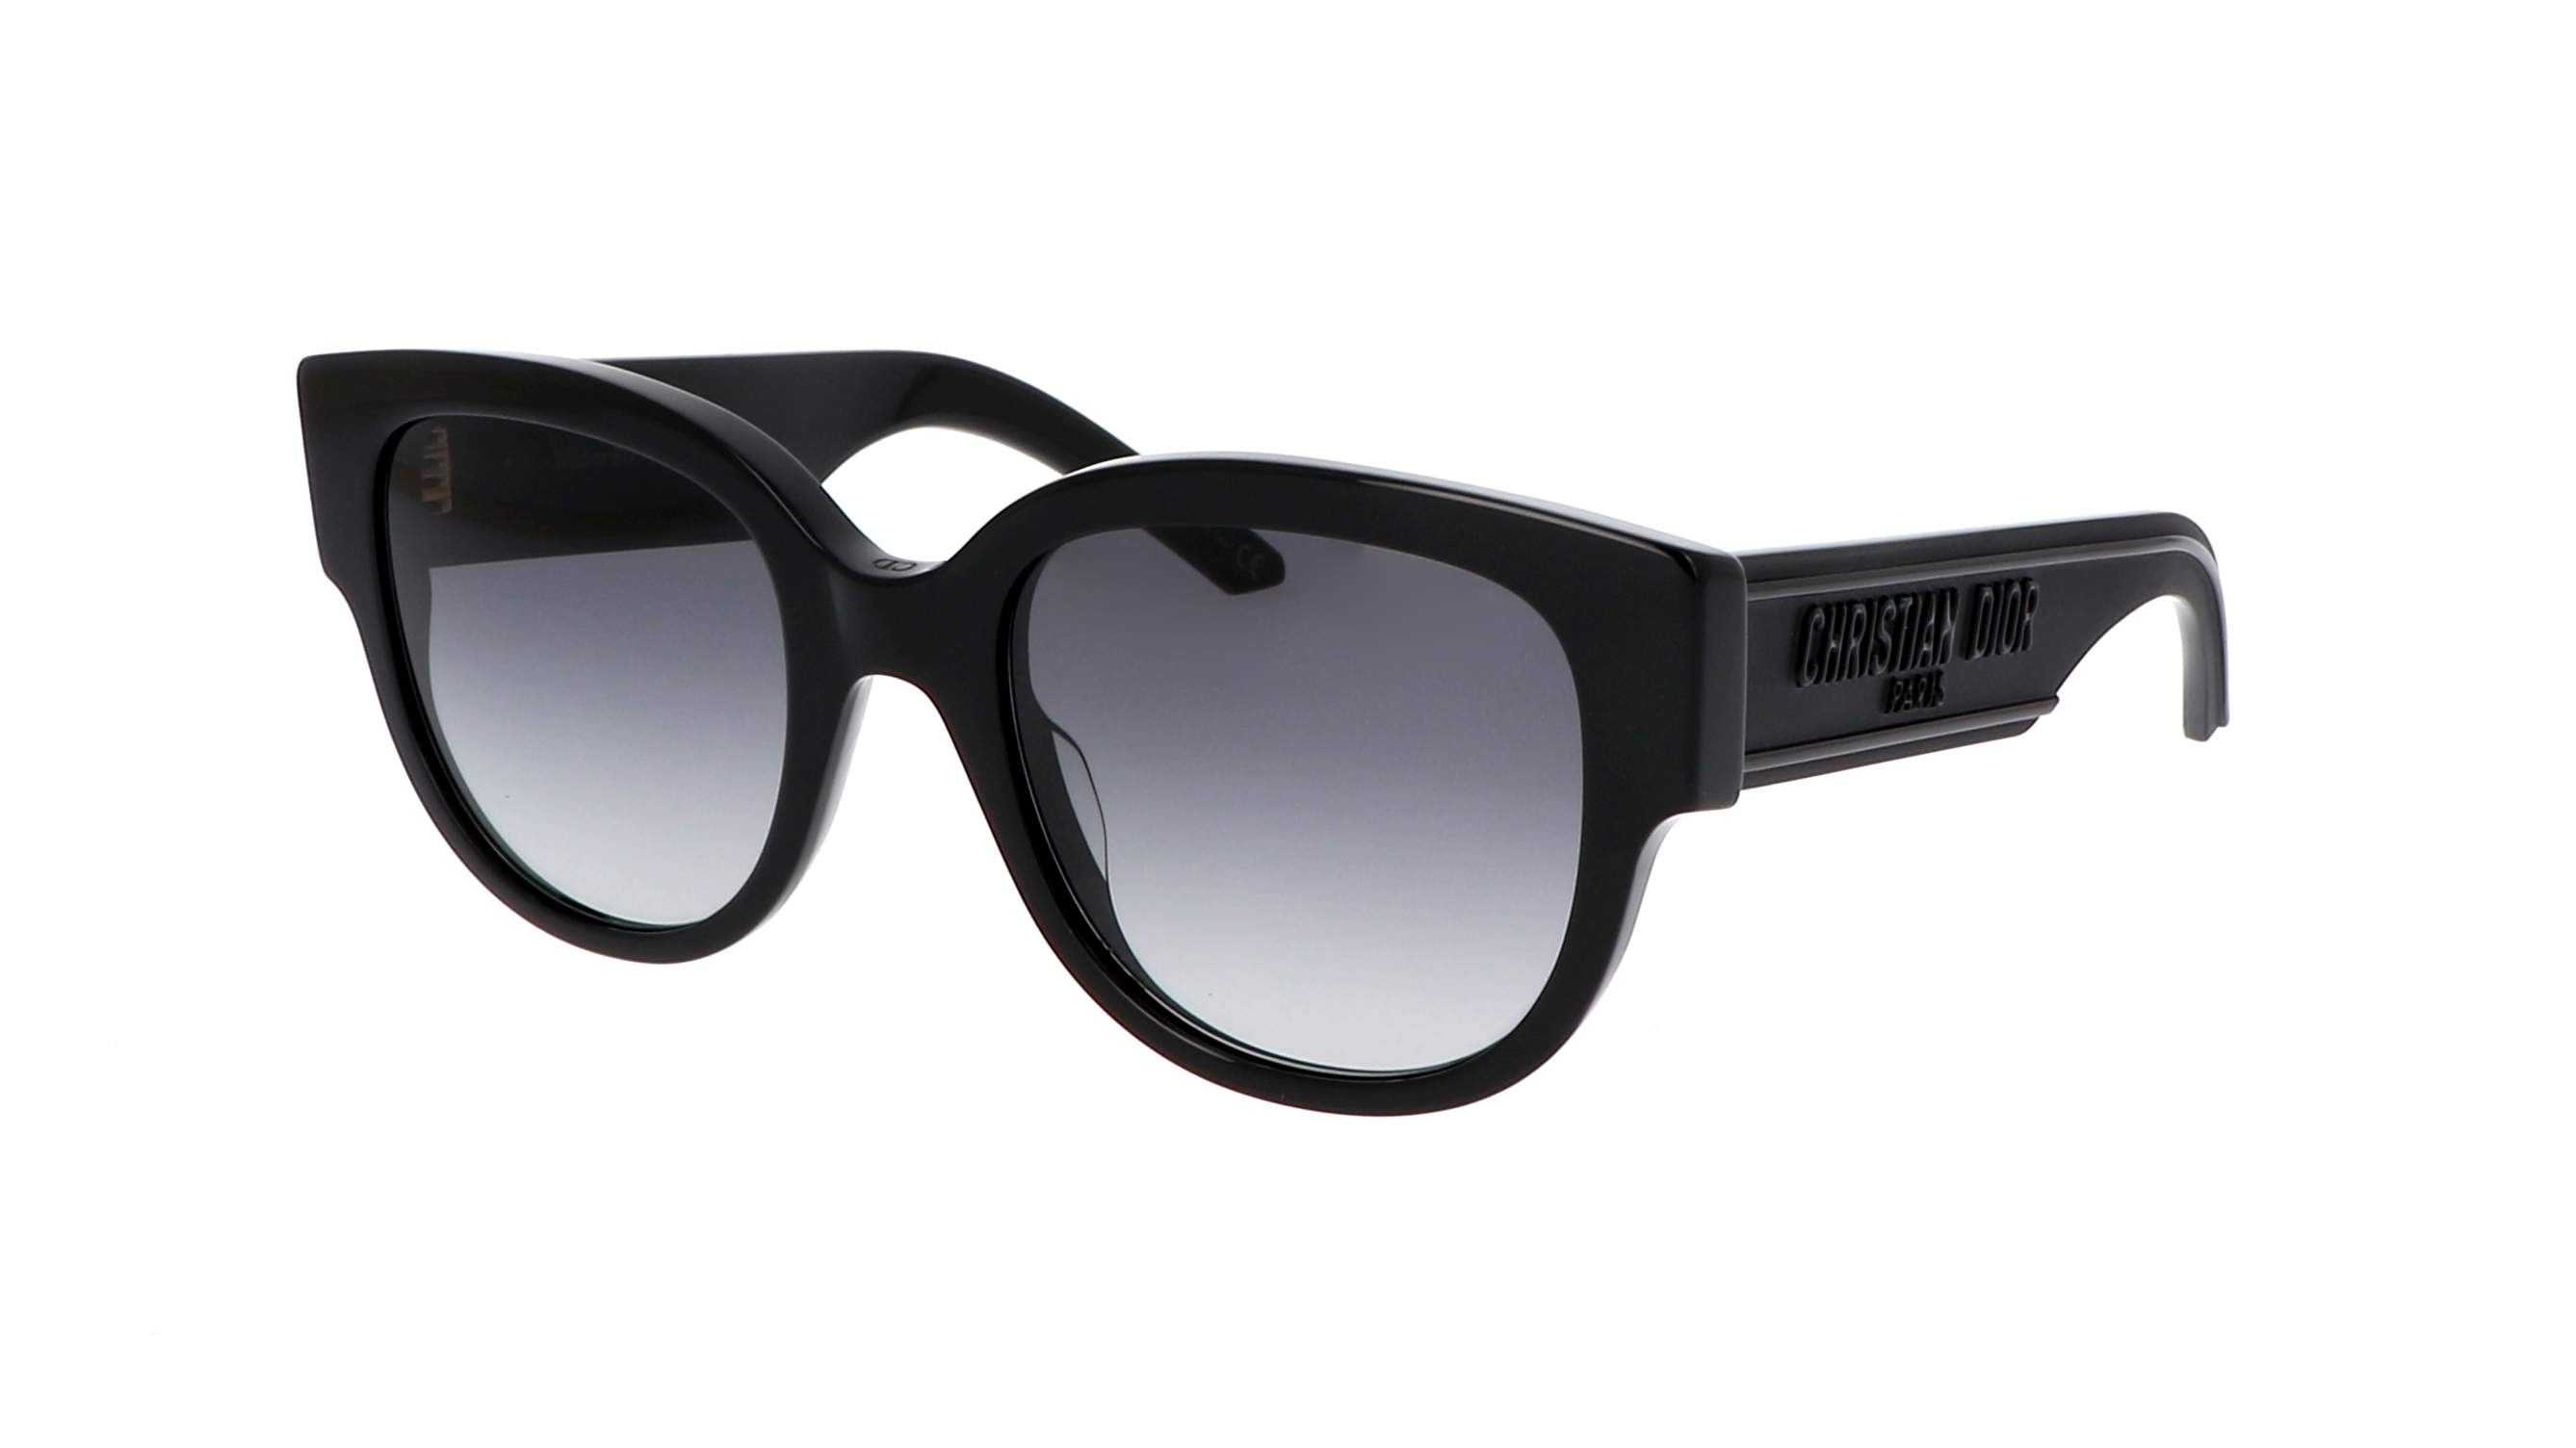 DIOR WilDior S2U 53 Grey  Black Sunglasses  Sunglass Hut United Kingdom